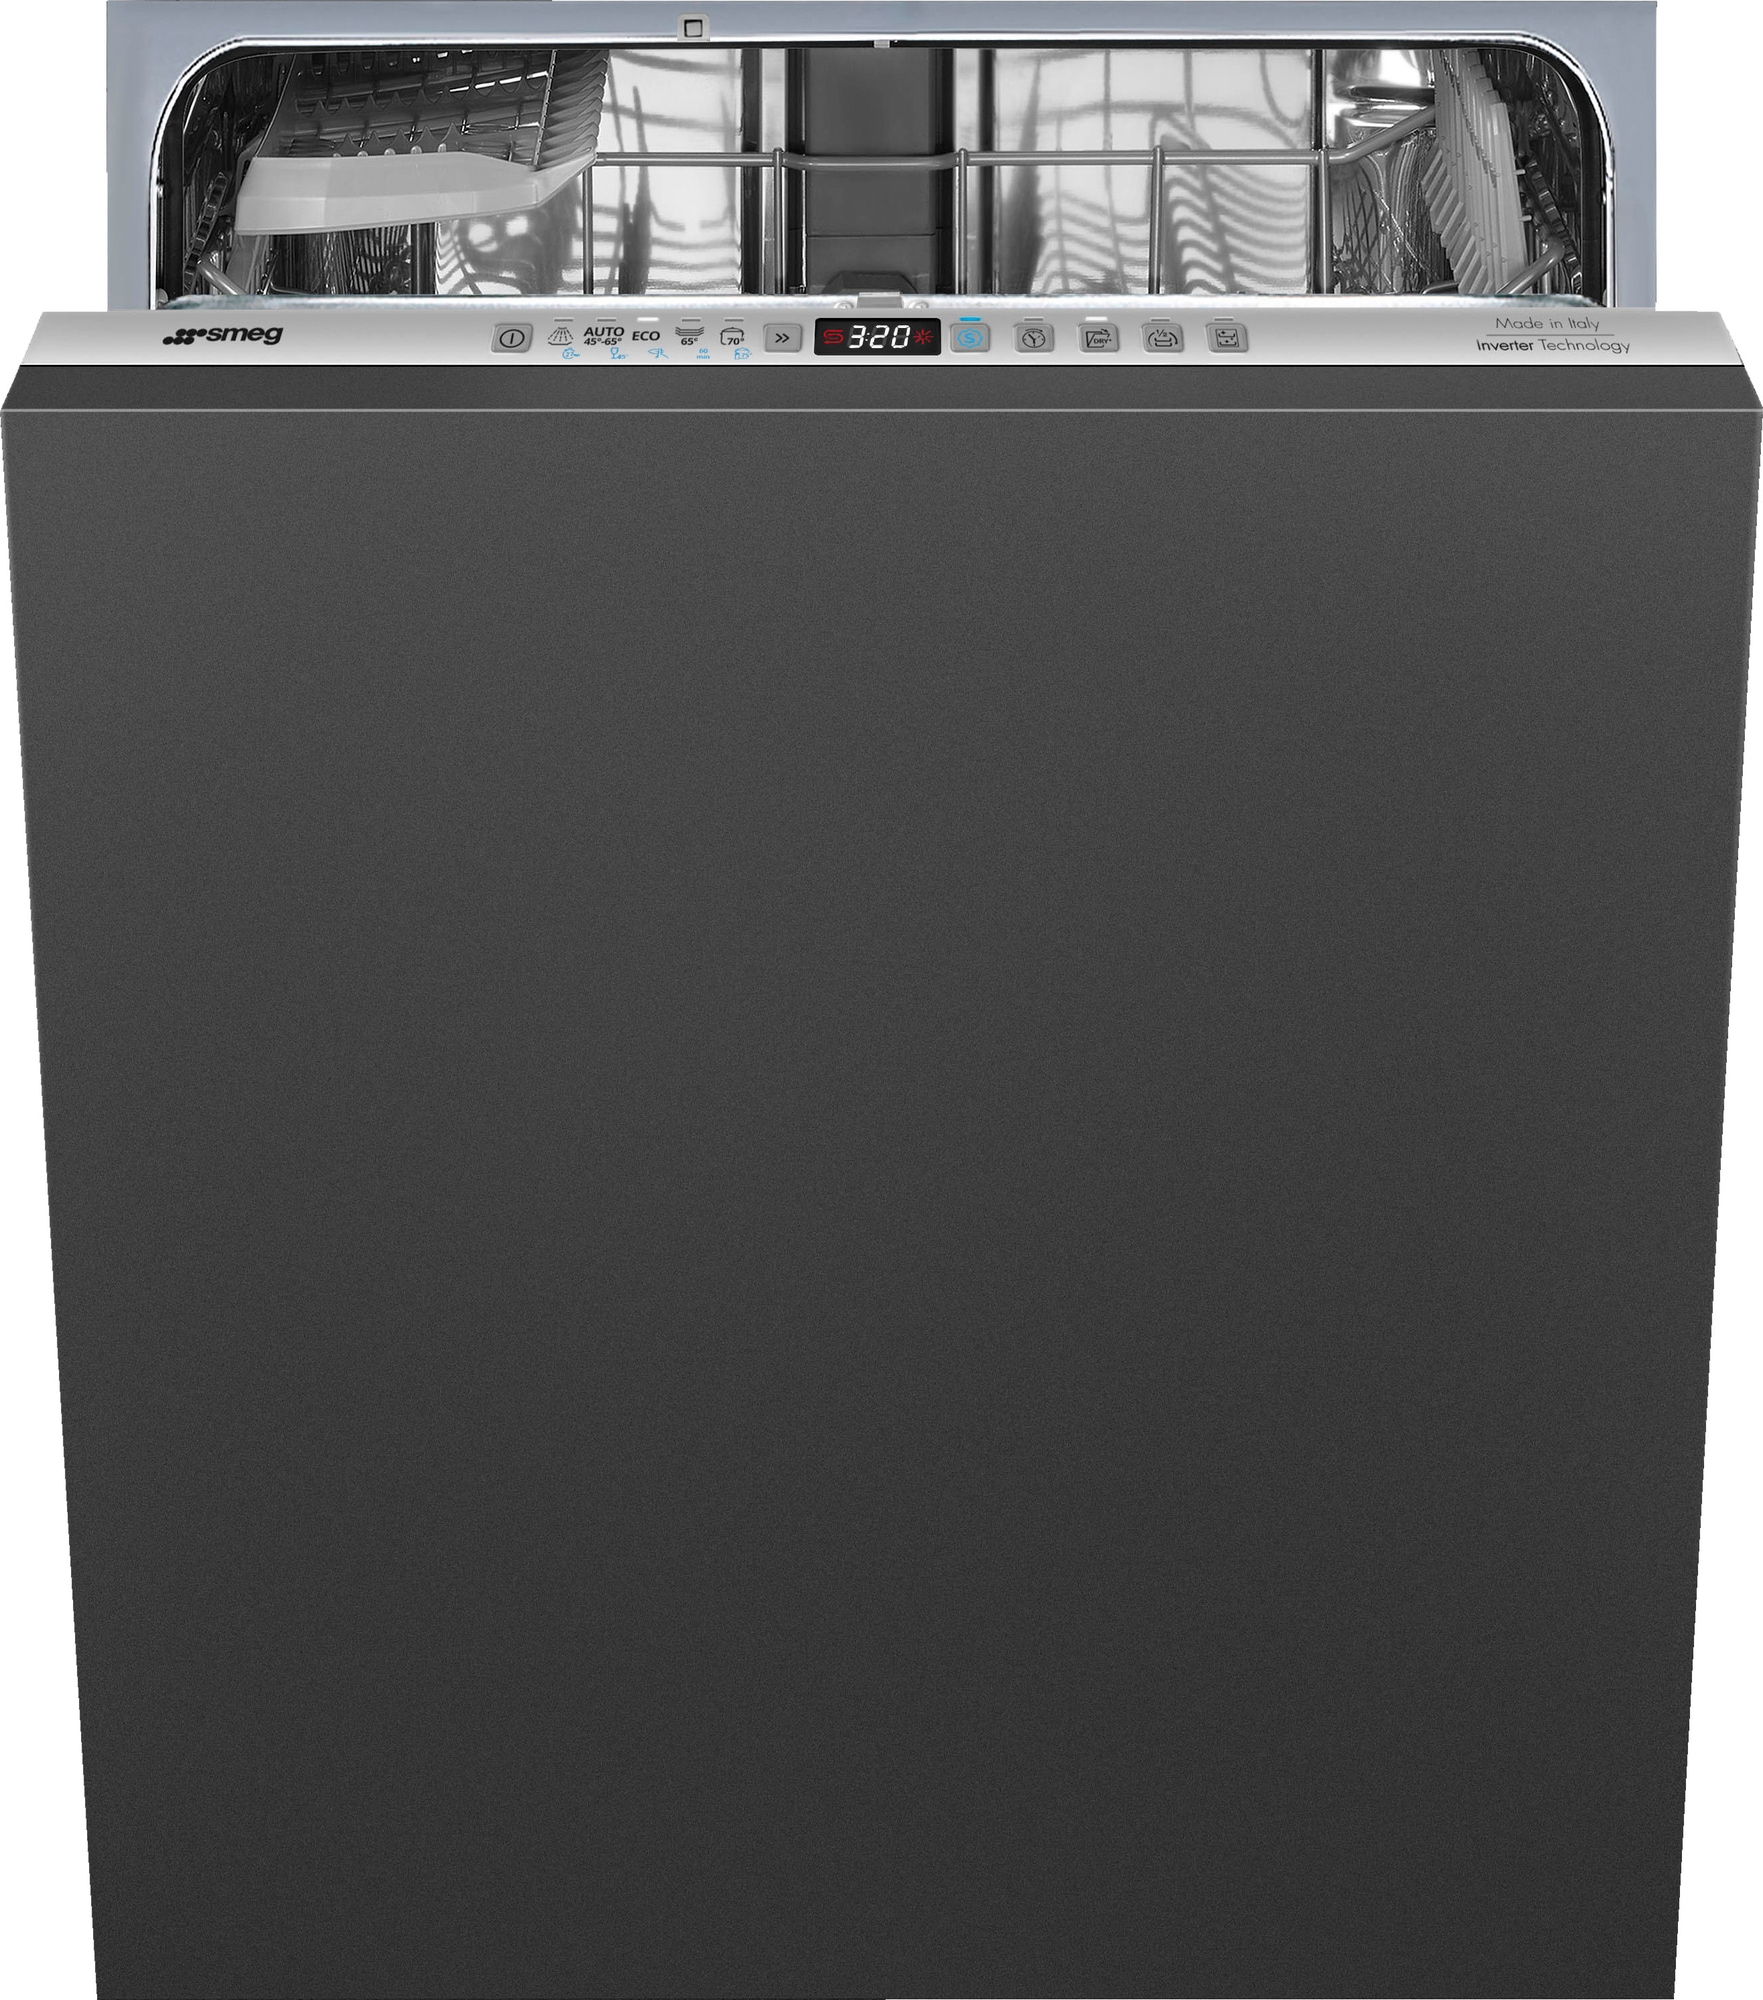 Billede af Smeg opvaskemaskine STL253CL fuldintegreret